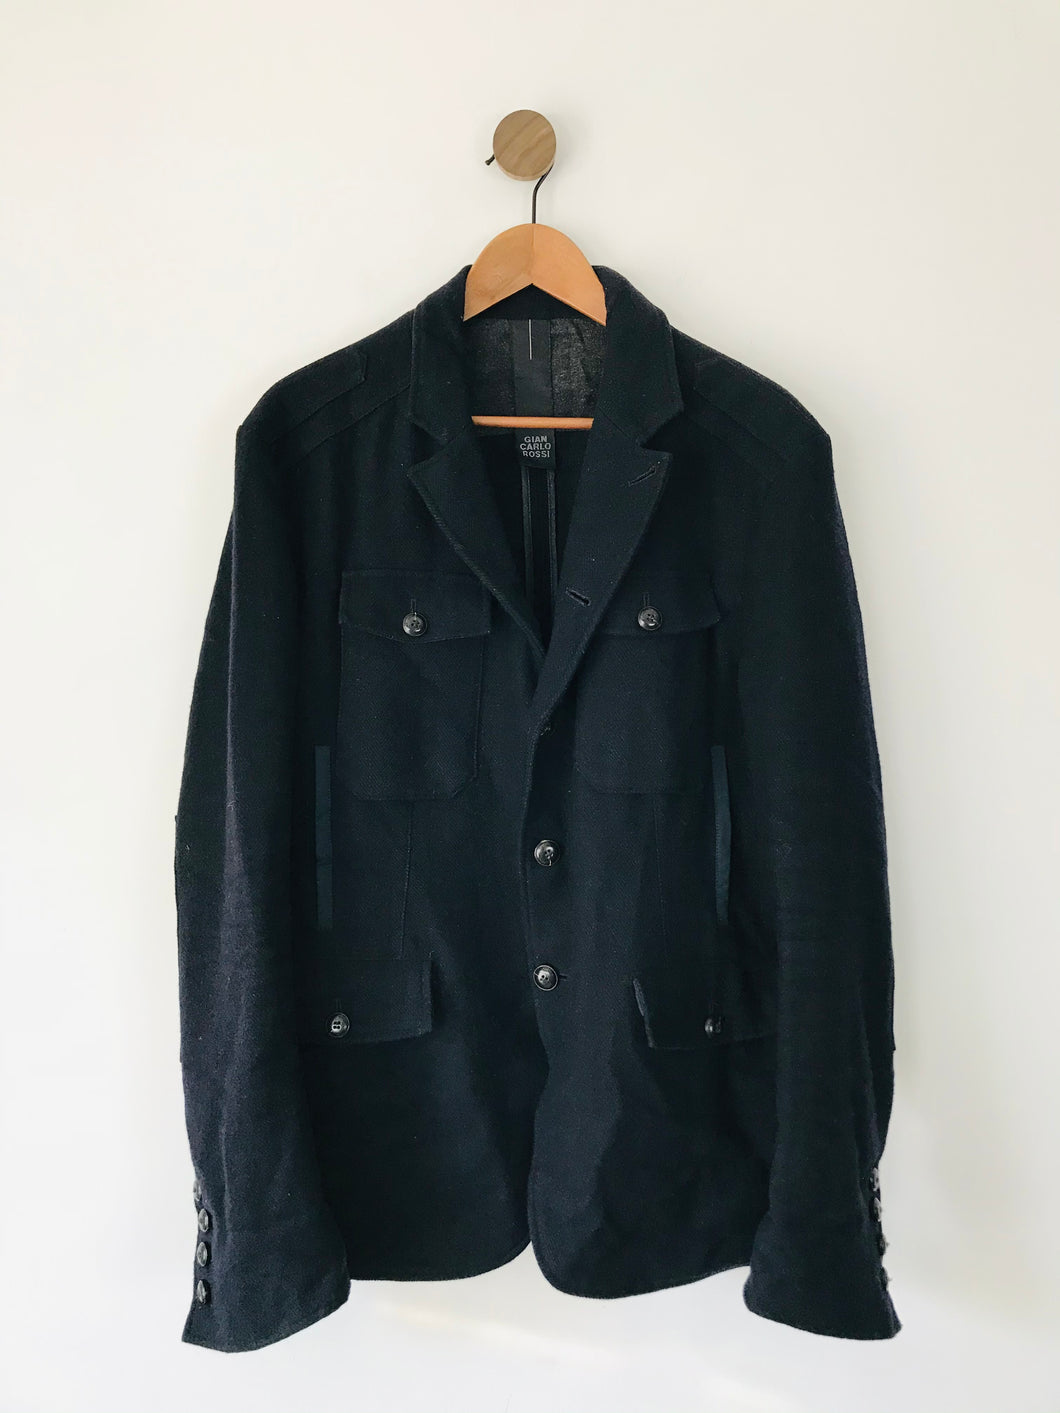 Gian Carlo Rossi Men’s Wool Linen Overcoat Jacket | 54 UK44 L | Navy Blue